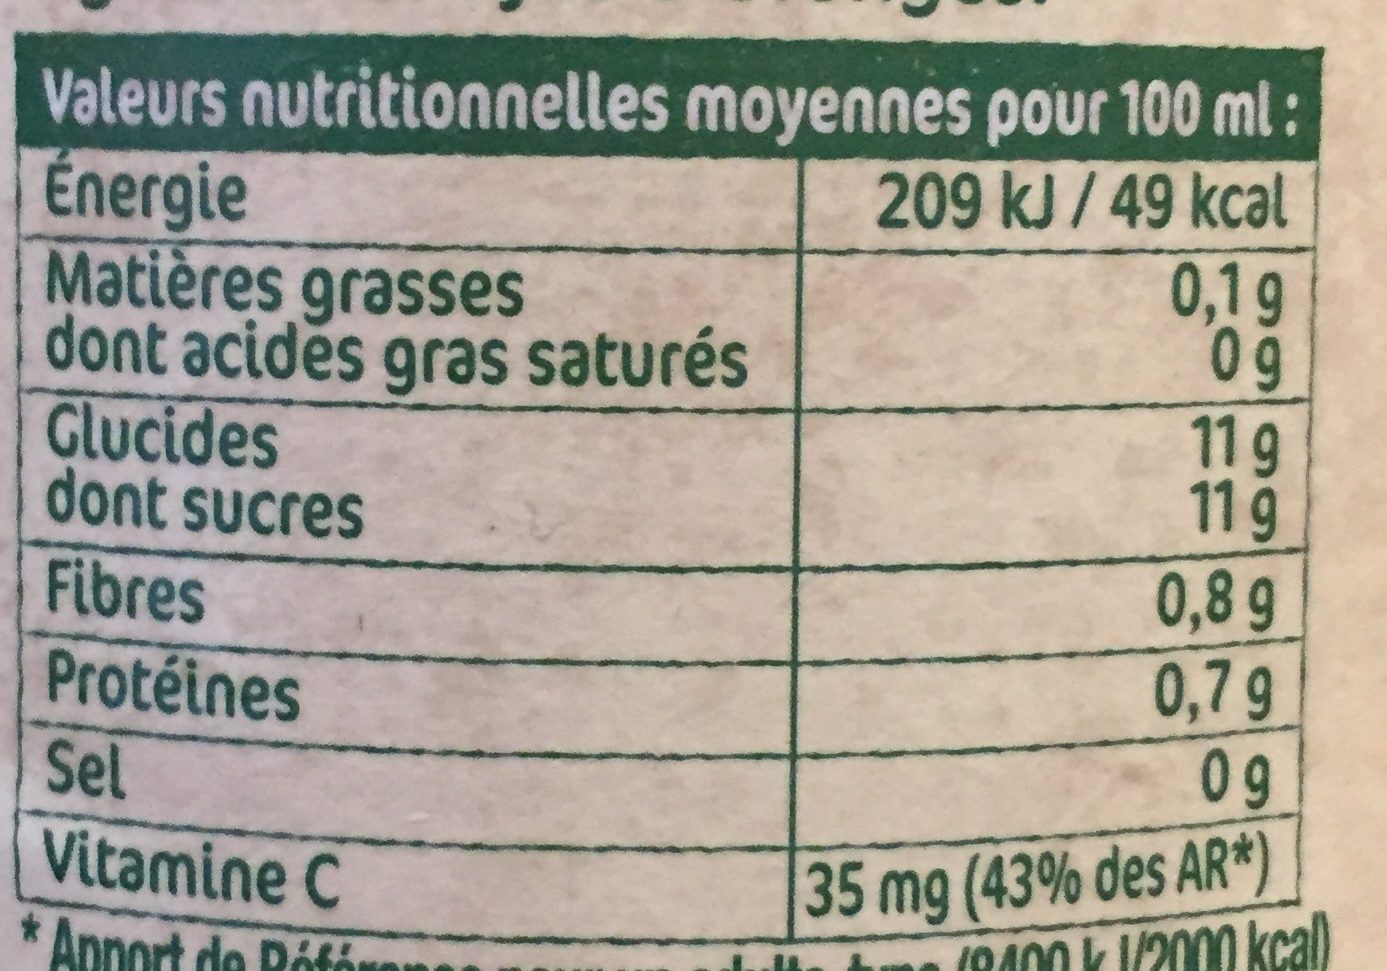 100% pur jus Oranges Pressées - Nutrition facts - fr